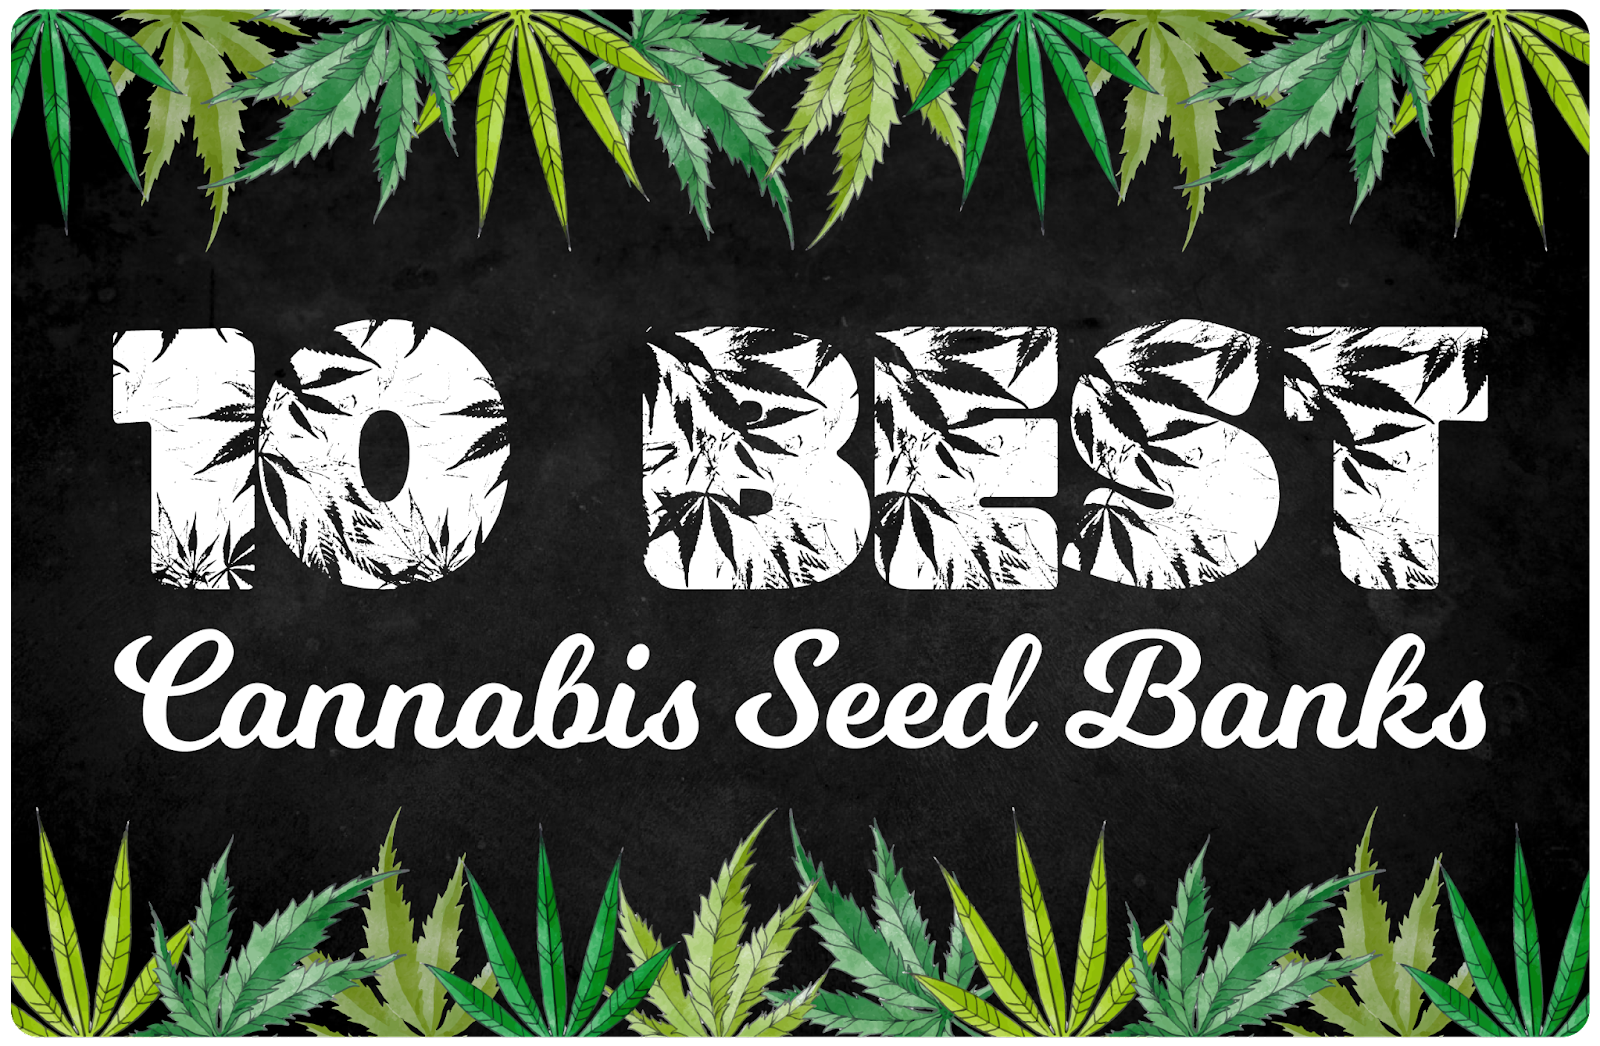 Bong Smoking Marijuana, Buy Cannabis Seeds Online